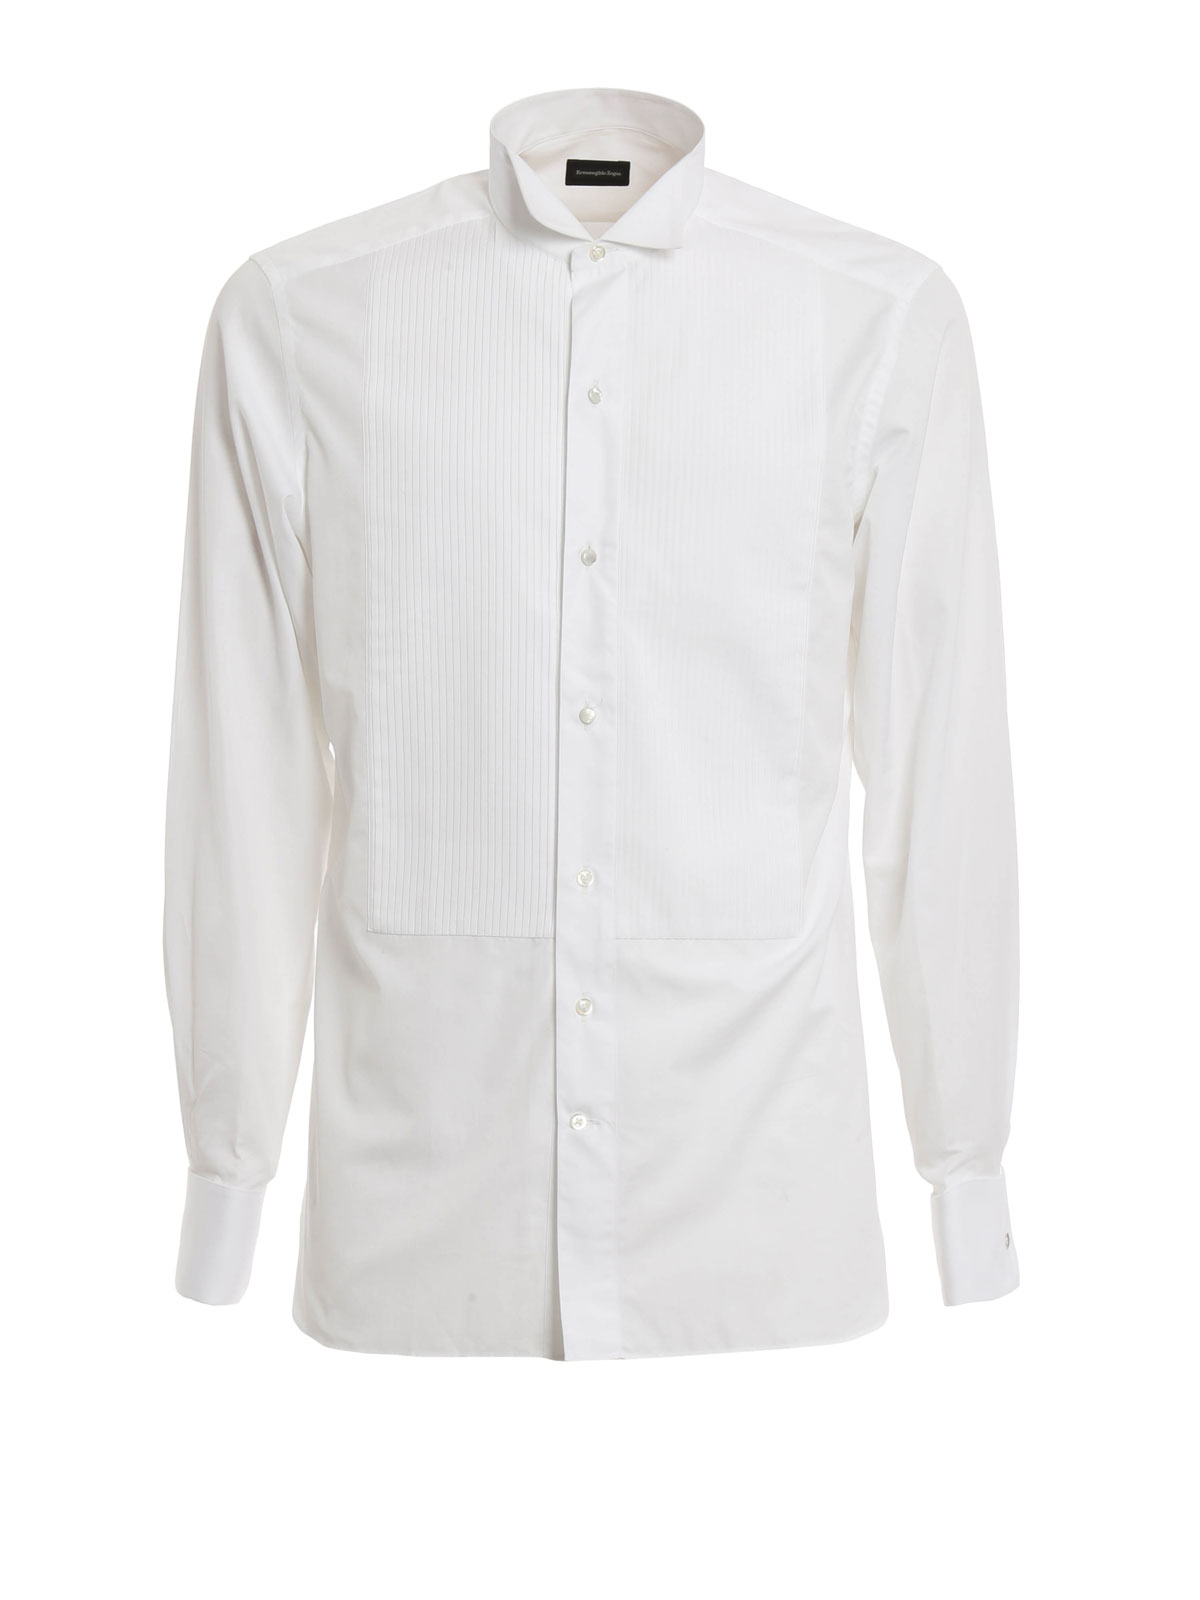 Zegna Tuxedo Shirt Hot Sale, 58% OFF ...